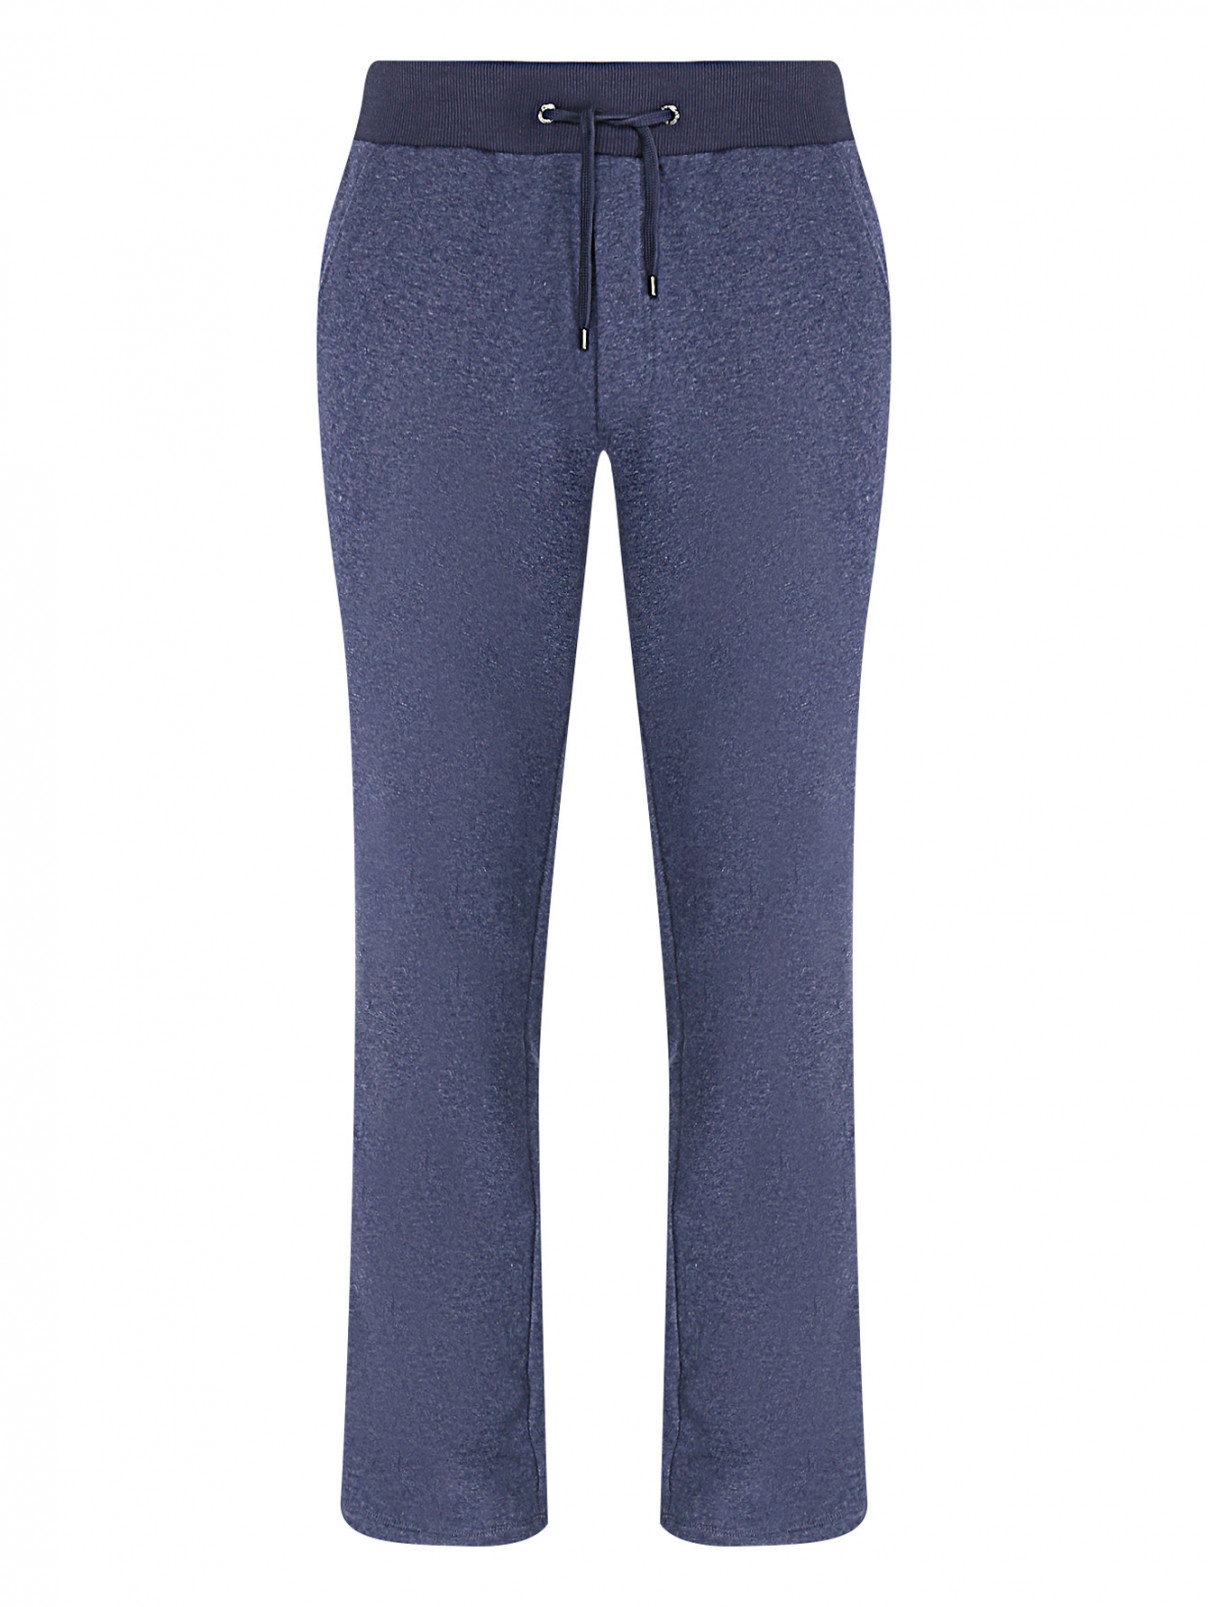 Трикотажные брюки на резинке с вышивкой BOSCO  –  Общий вид  – Цвет:  Синий